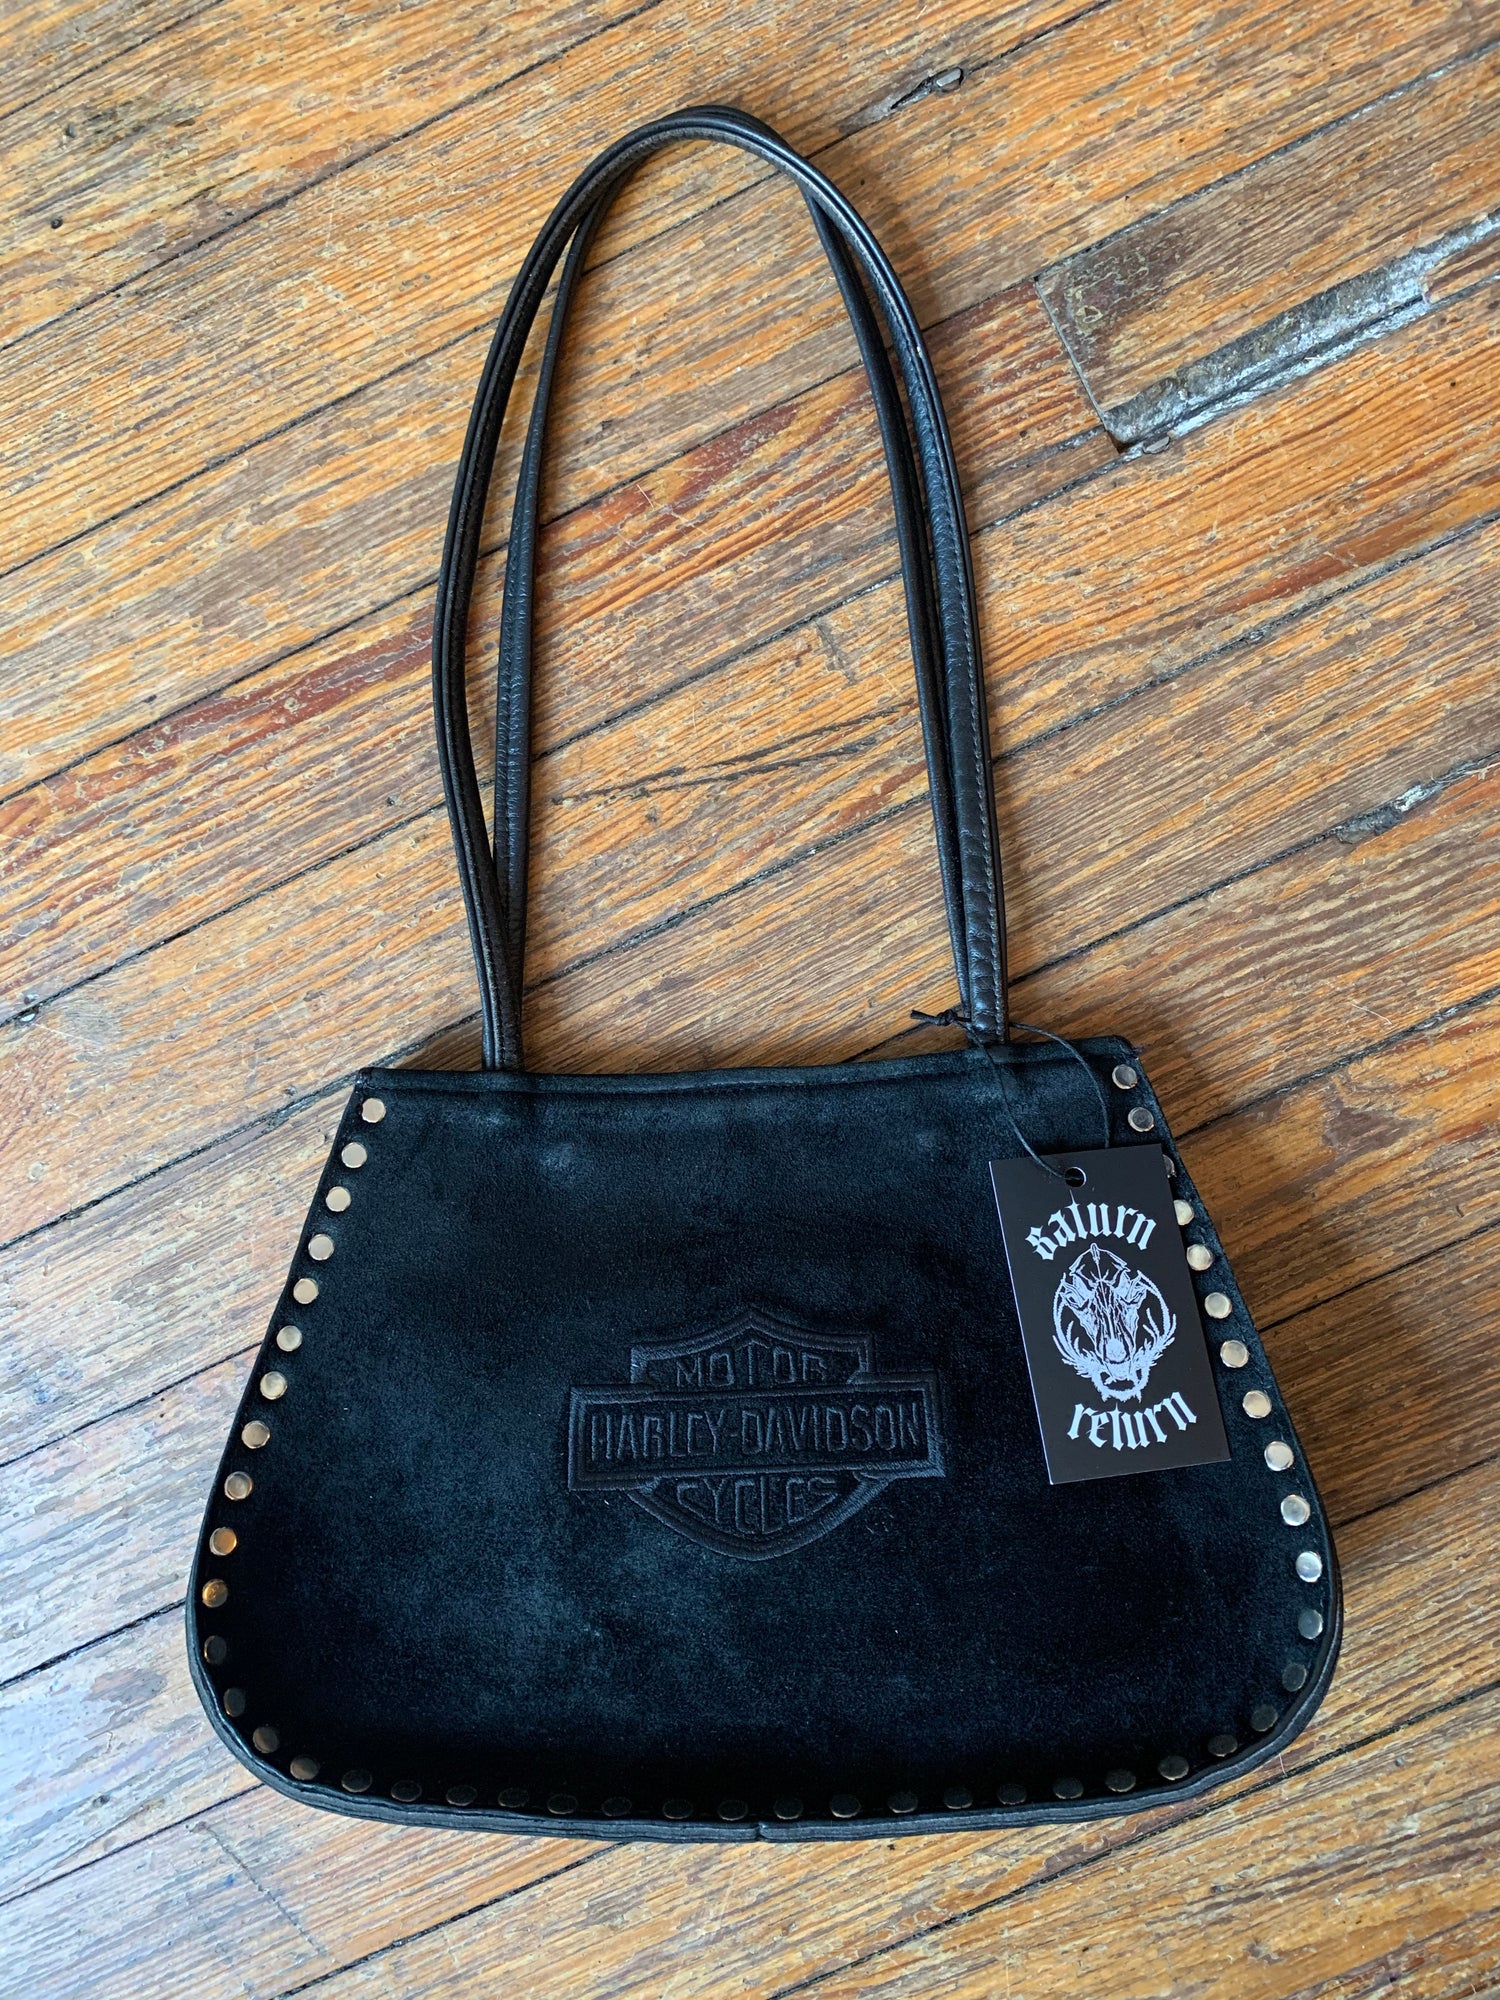 Vintage Harley-Davidson Black Suede Studded Shoulder Bag